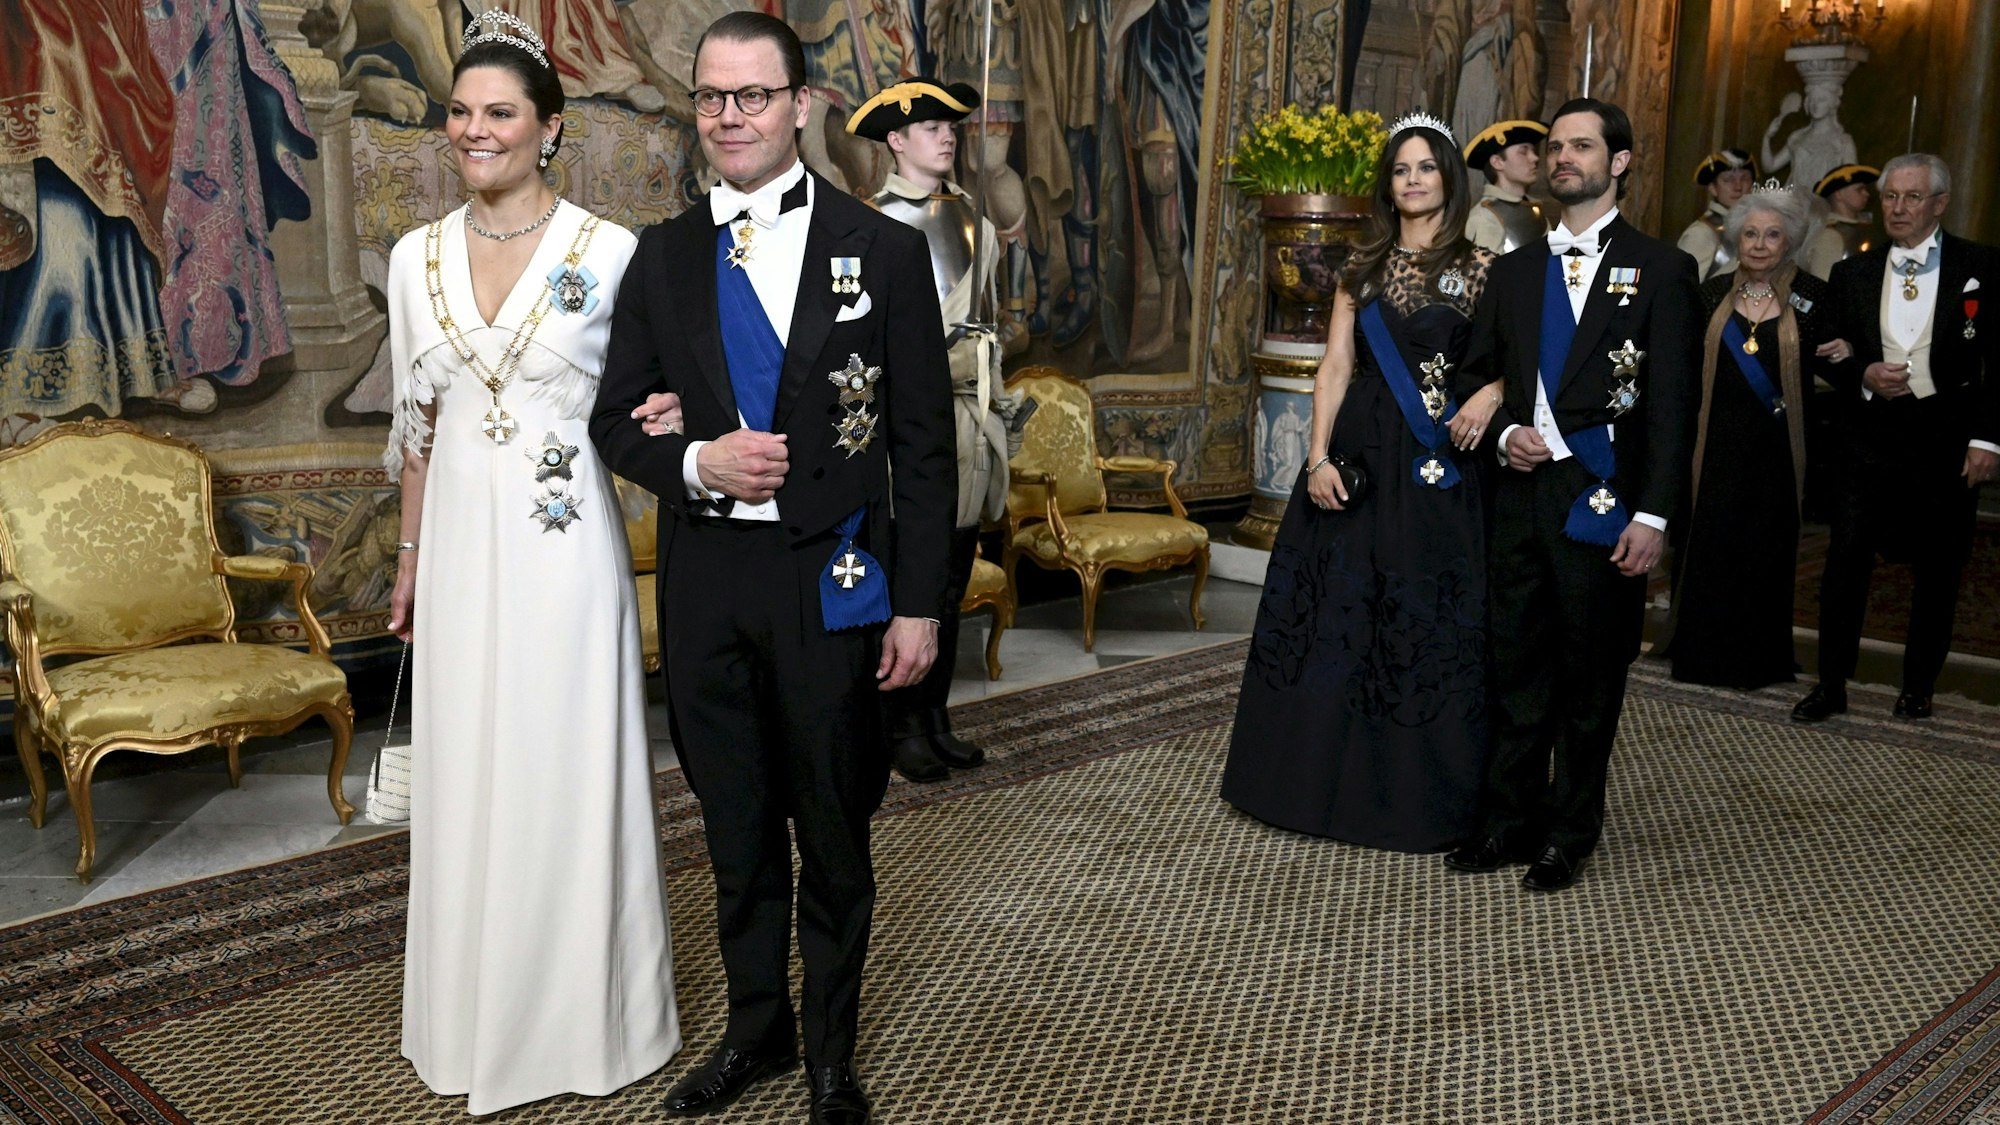 Kronprinzessin Victoria mit Prinz Daniel und Prinz Carl Philip mit Prinzessin Sofia vor dem Staatsdinner im Königlichen Palast.